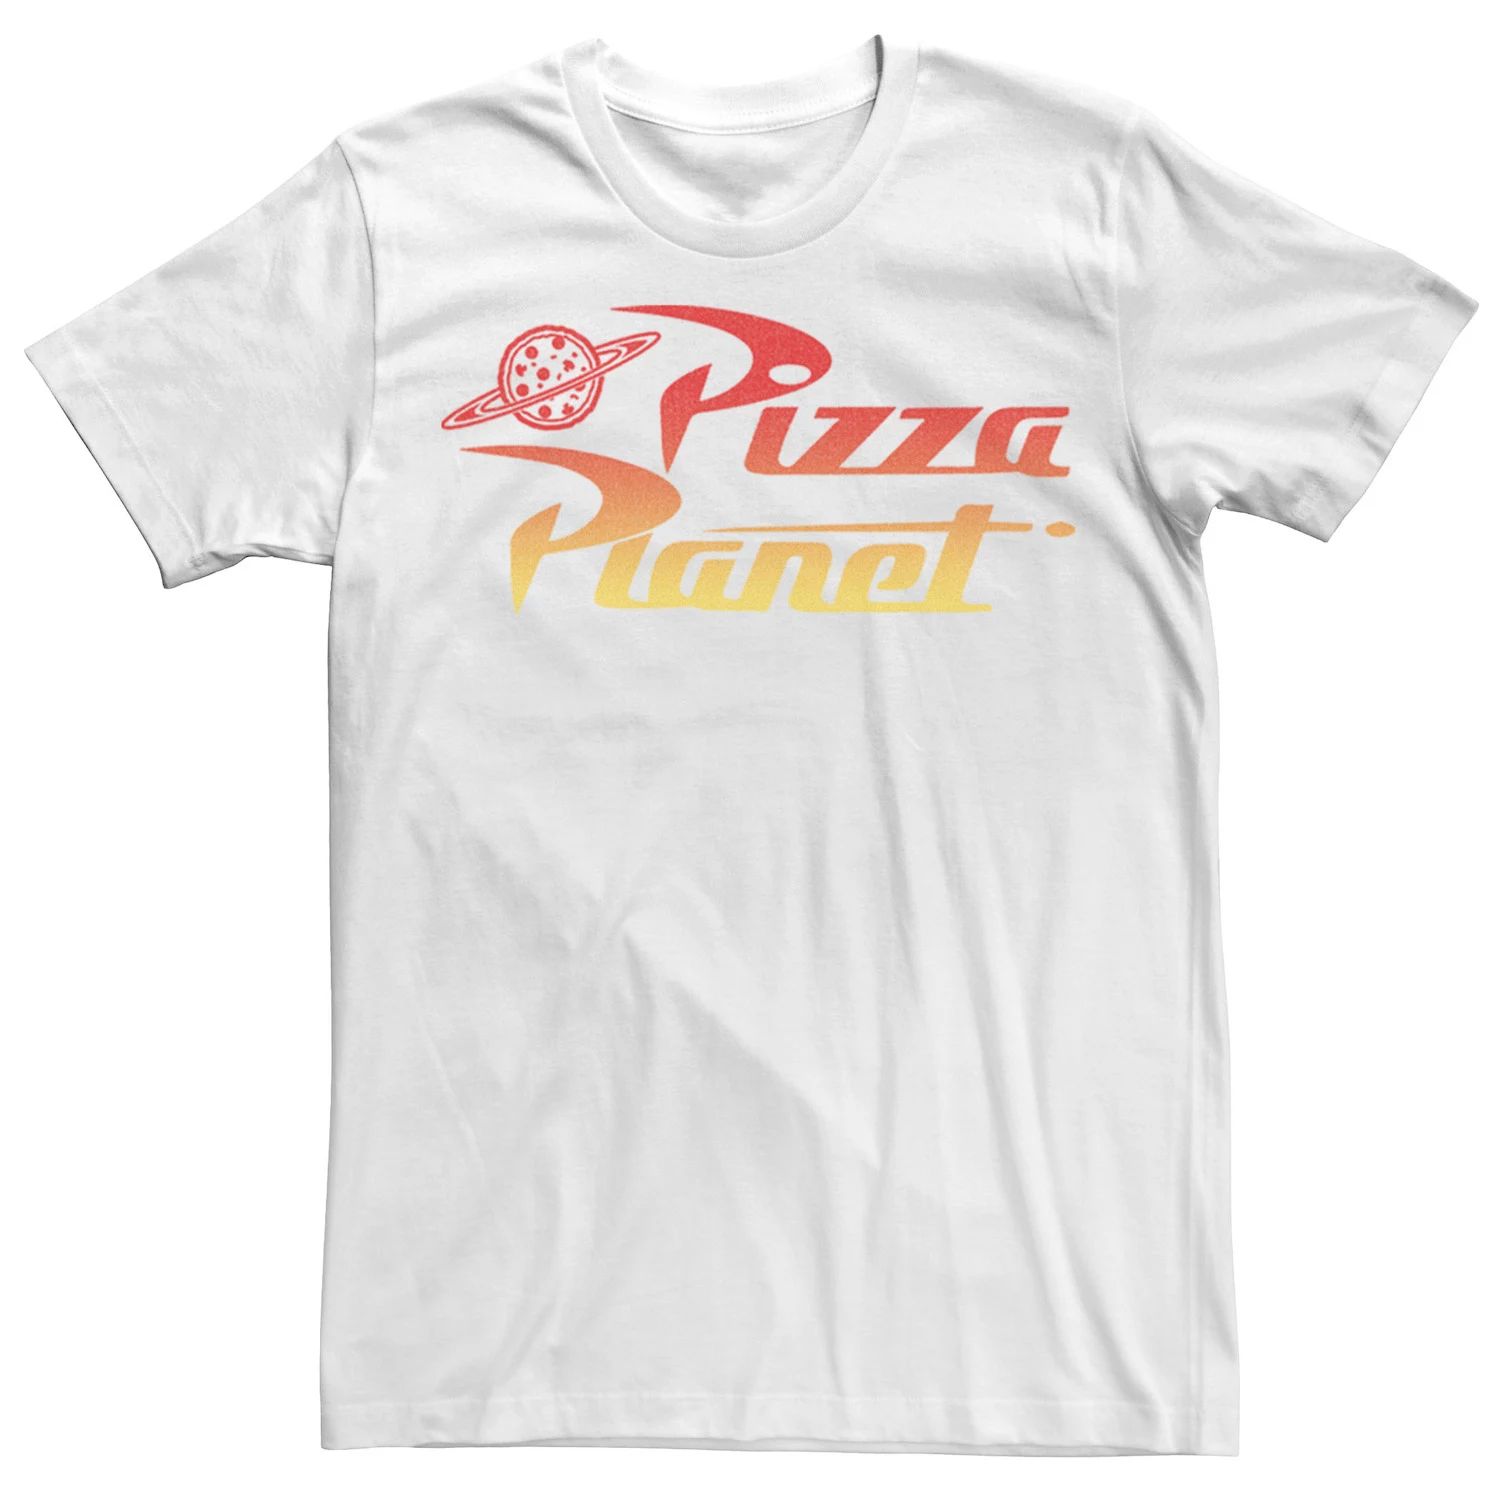 Мужская футболка с градиентным логотипом Disney/Pixar «История игрушек Пицца Планета» Disney / Pixar, белый мужская футболка планета пицца s белый